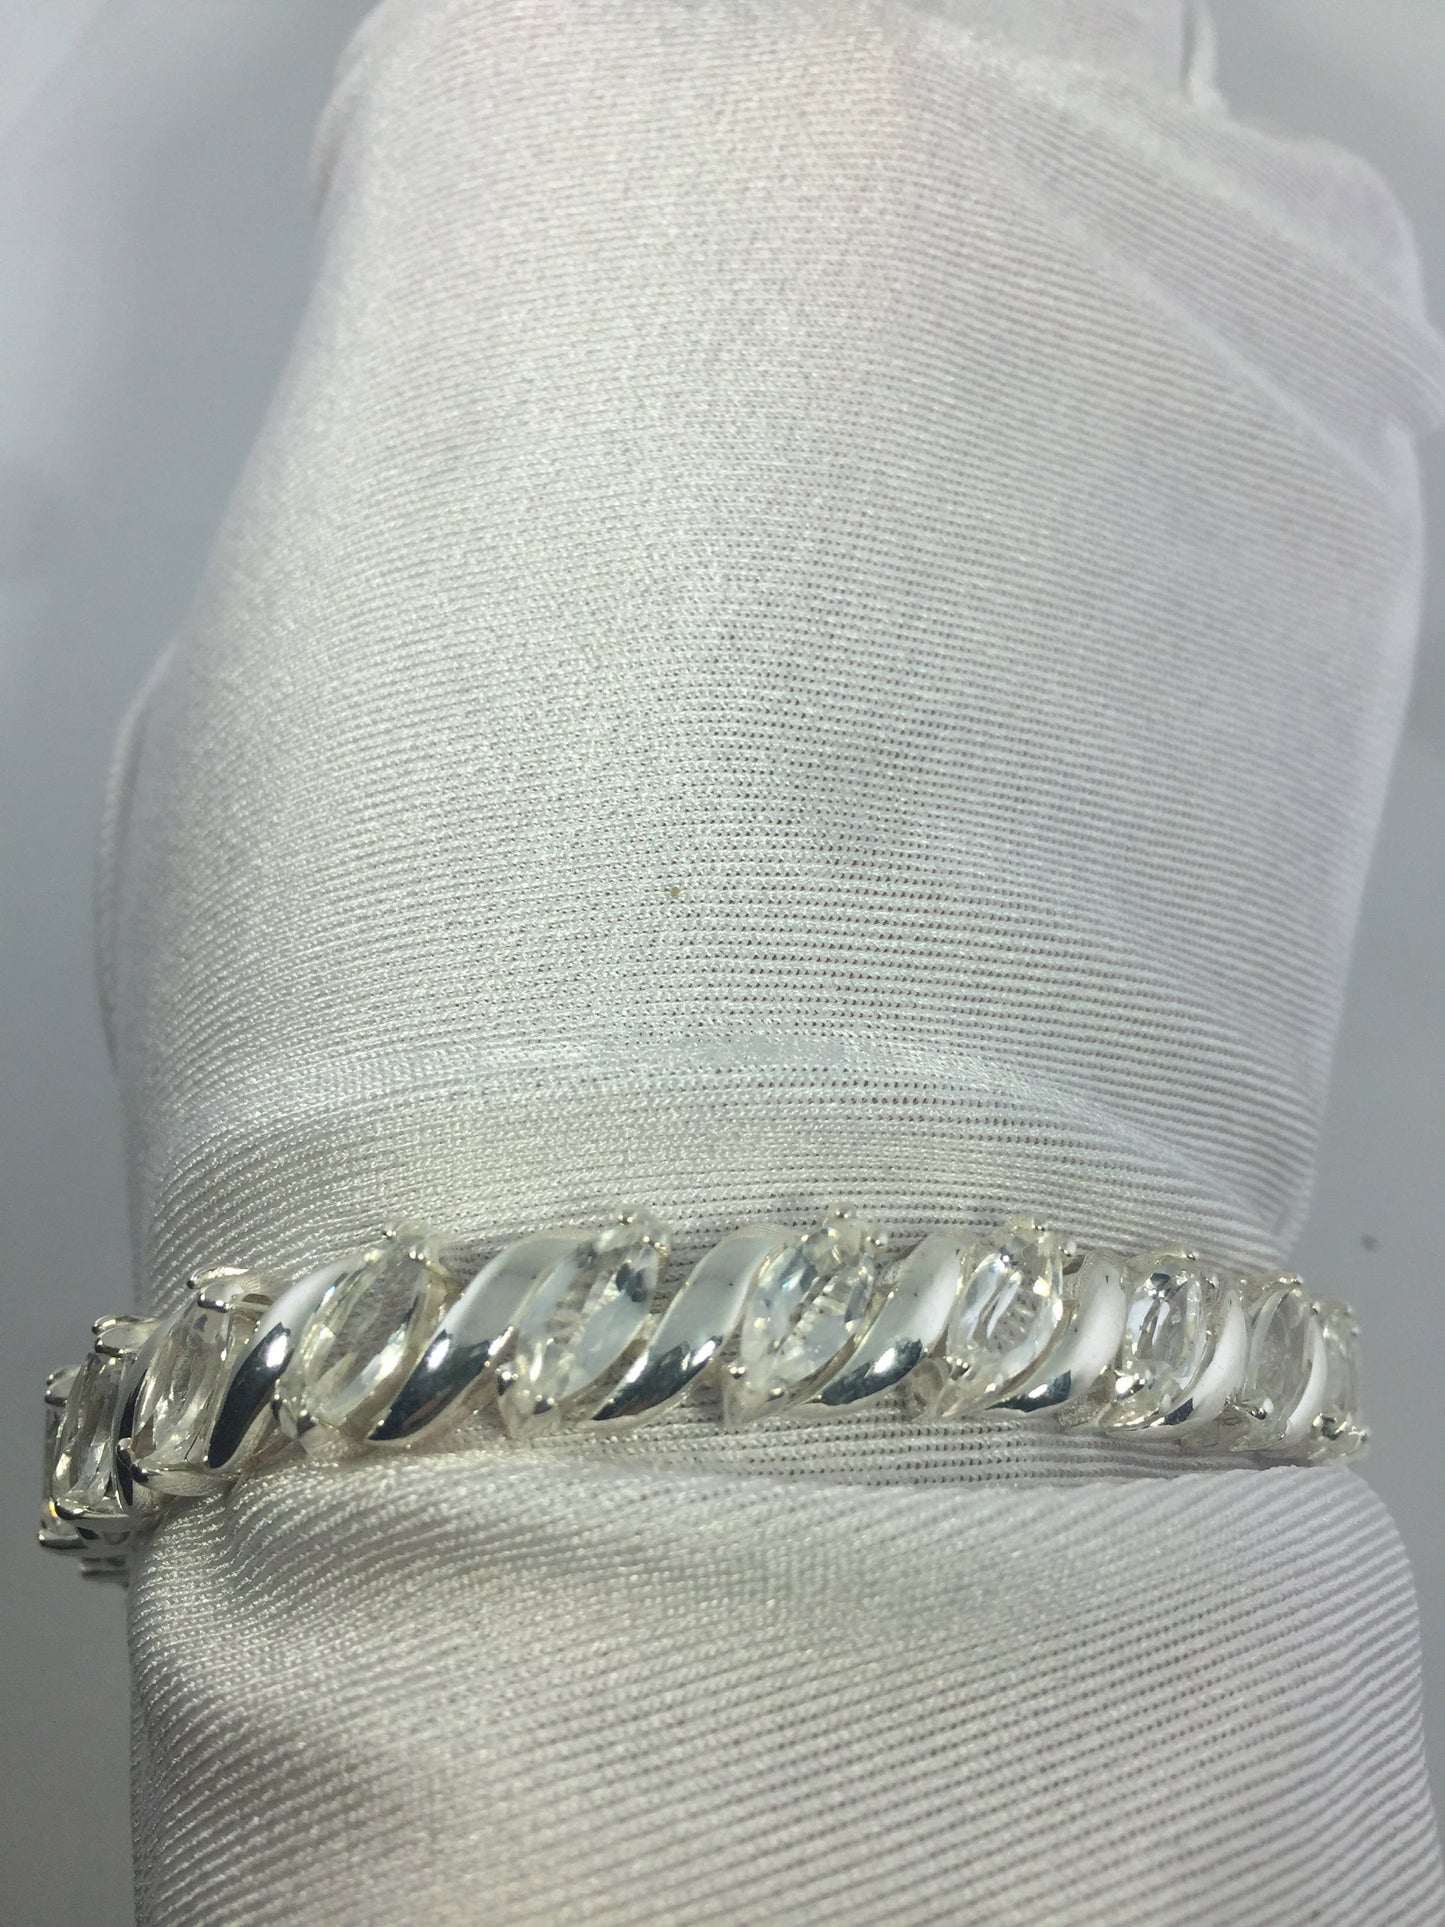 Handmade Genuine White Sapphires 925 Sterling Silver Tennis Bracelet